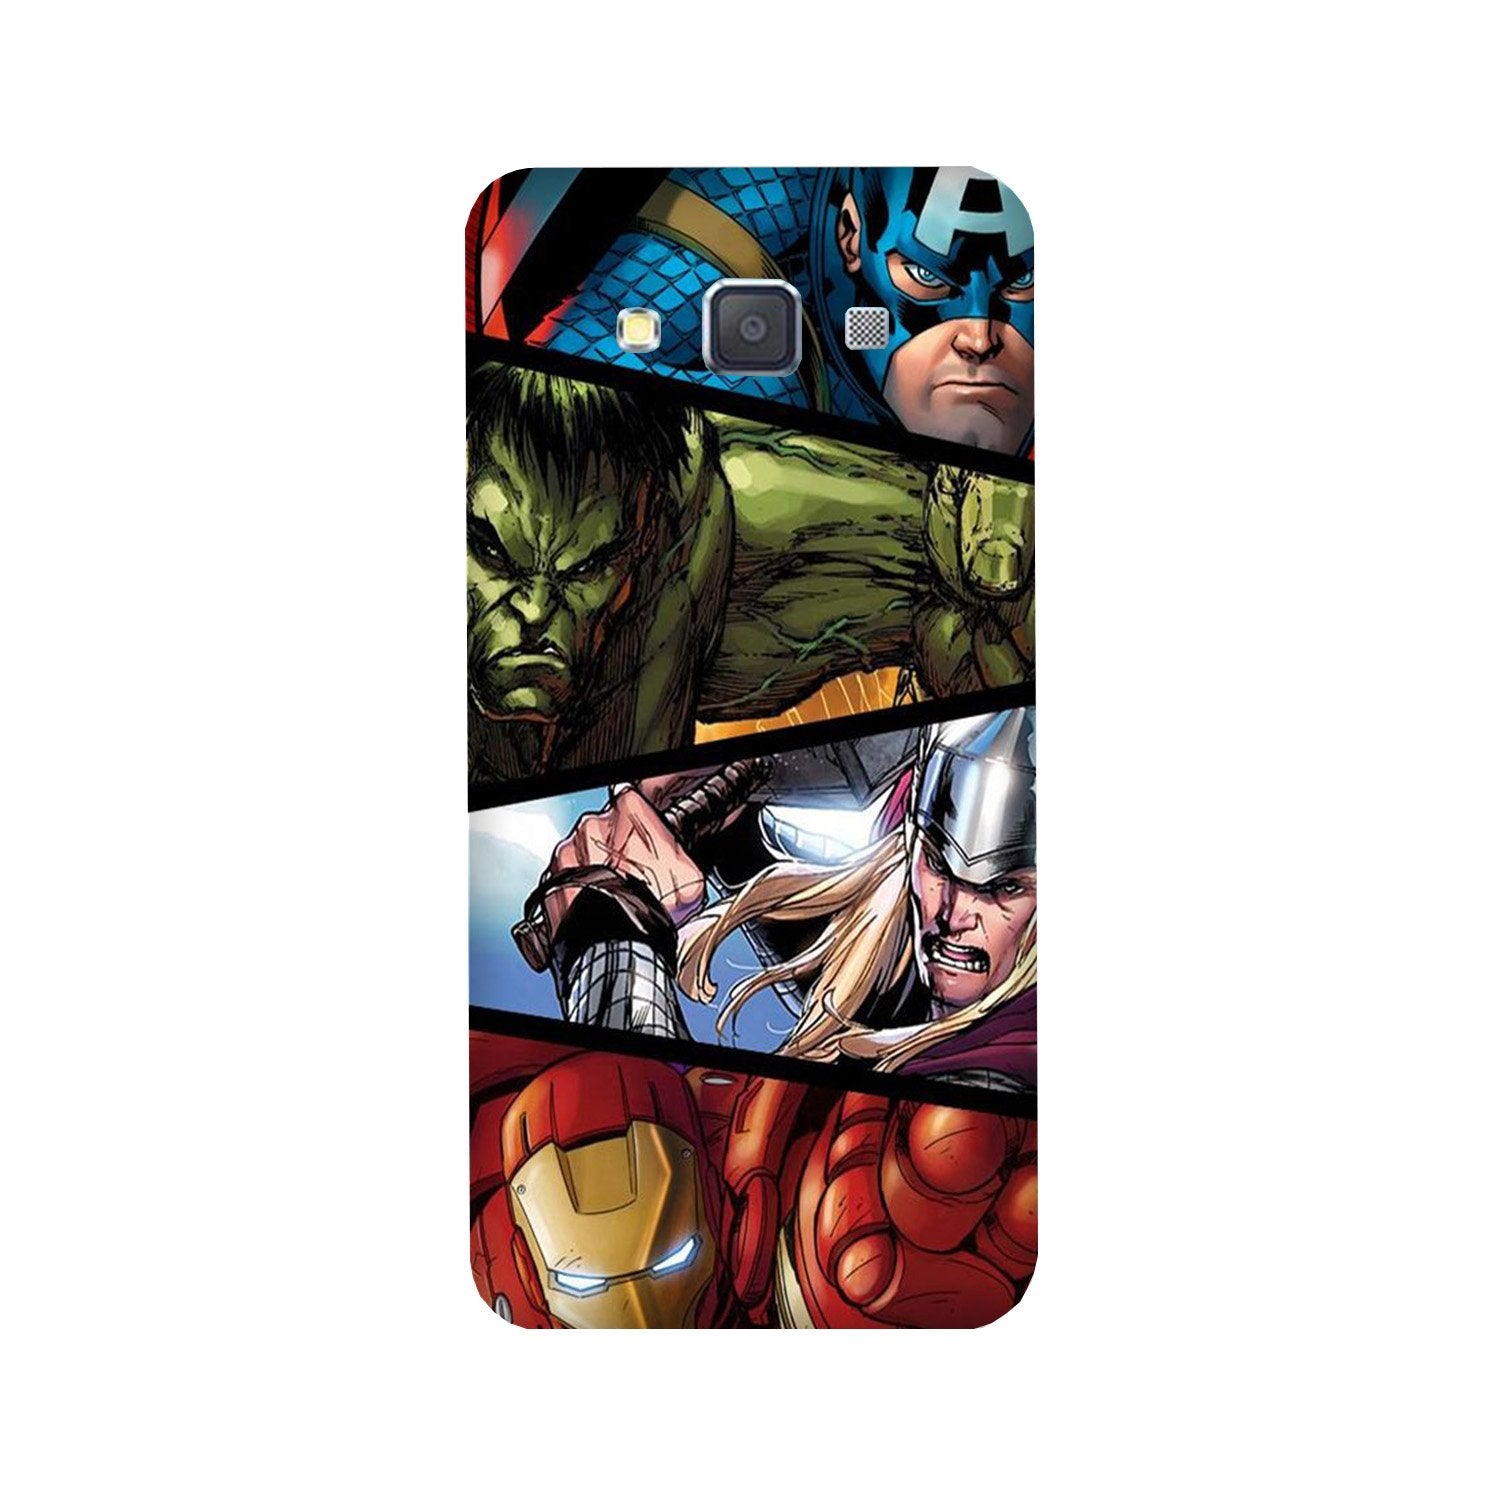 Avengers Superhero Case for Galaxy E7(Design - 124)